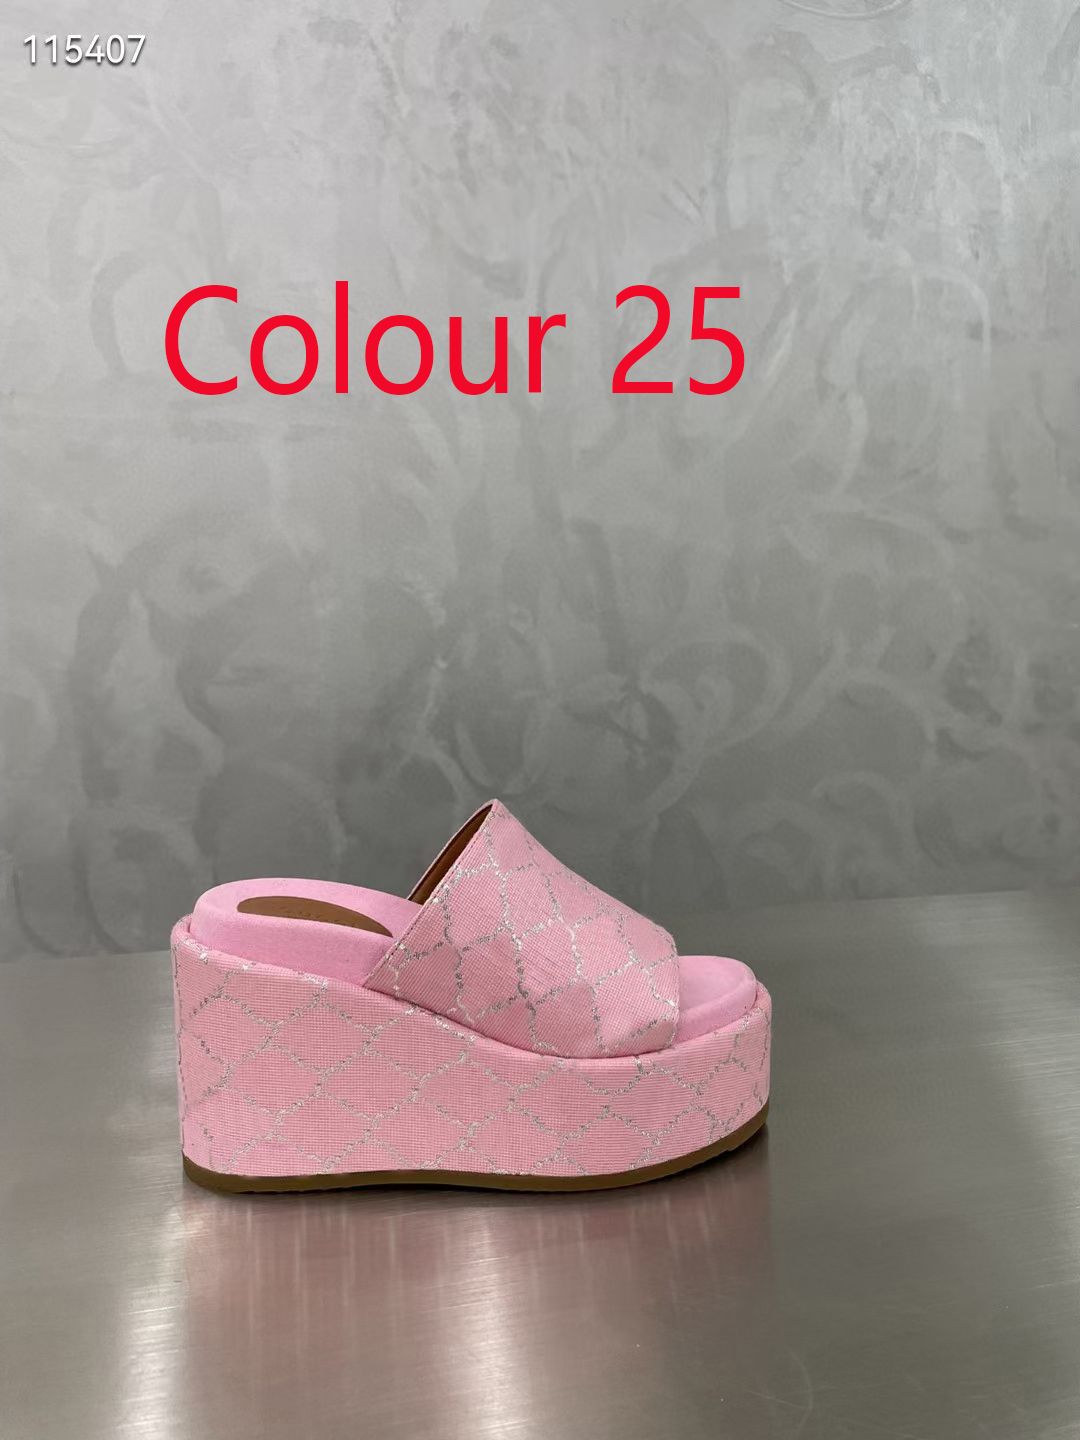 colour 25